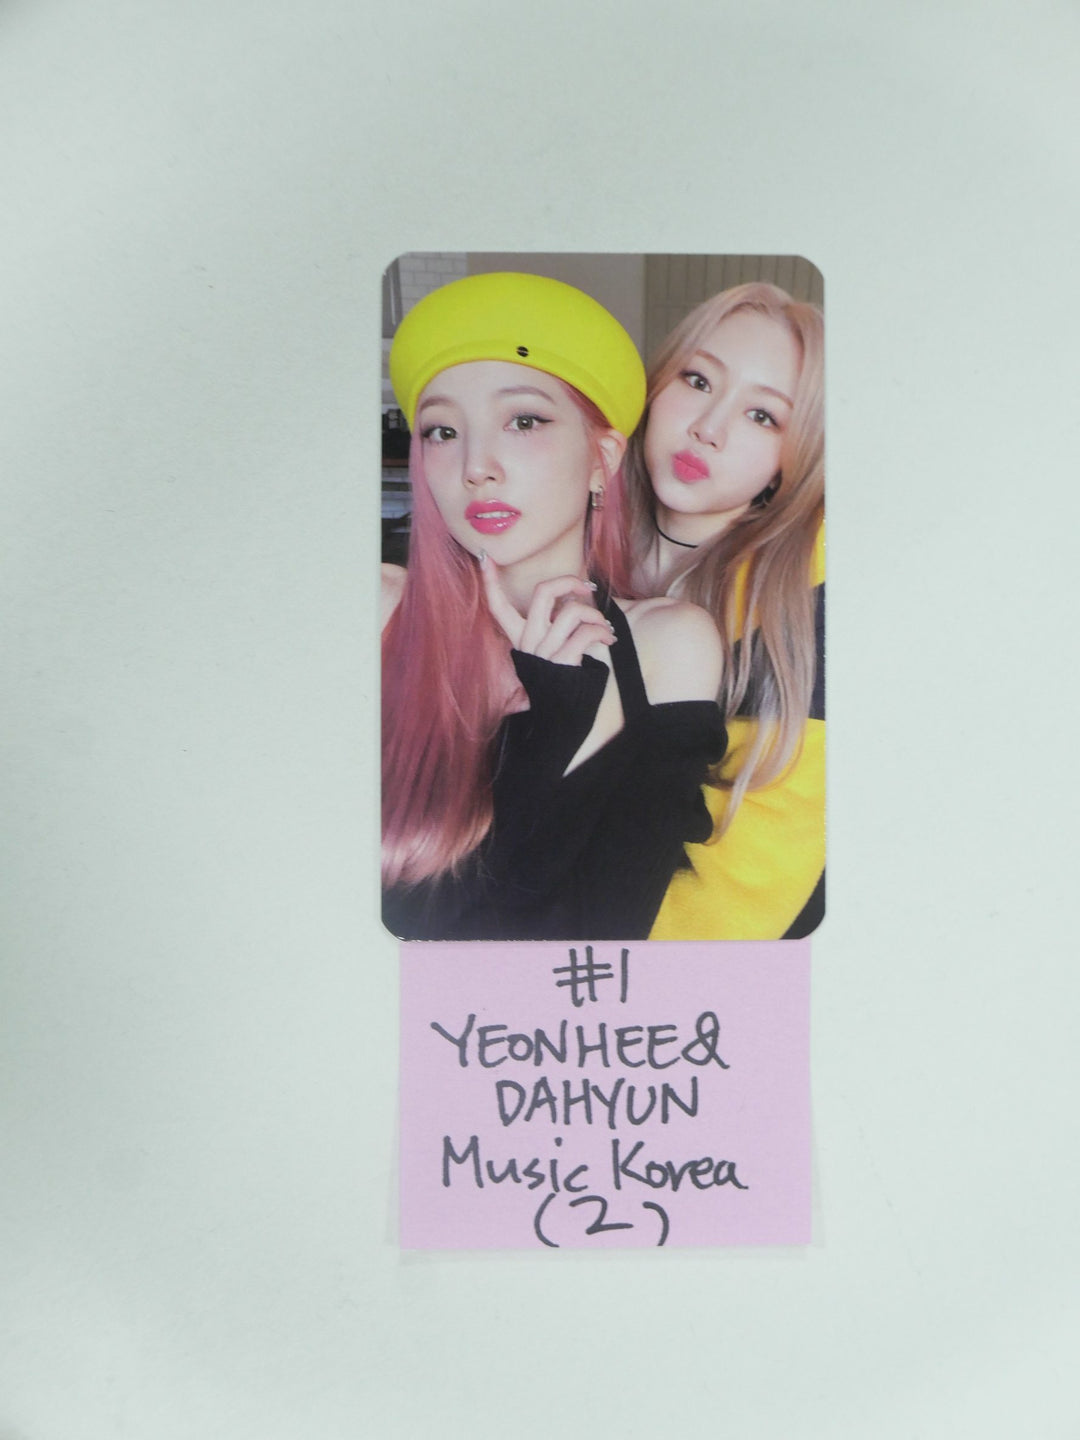 로켓펀치 'Yellow Punch' - 뮤직코리아 팬사인회 이벤트 포토카드 ( 3/17 업데이트 )